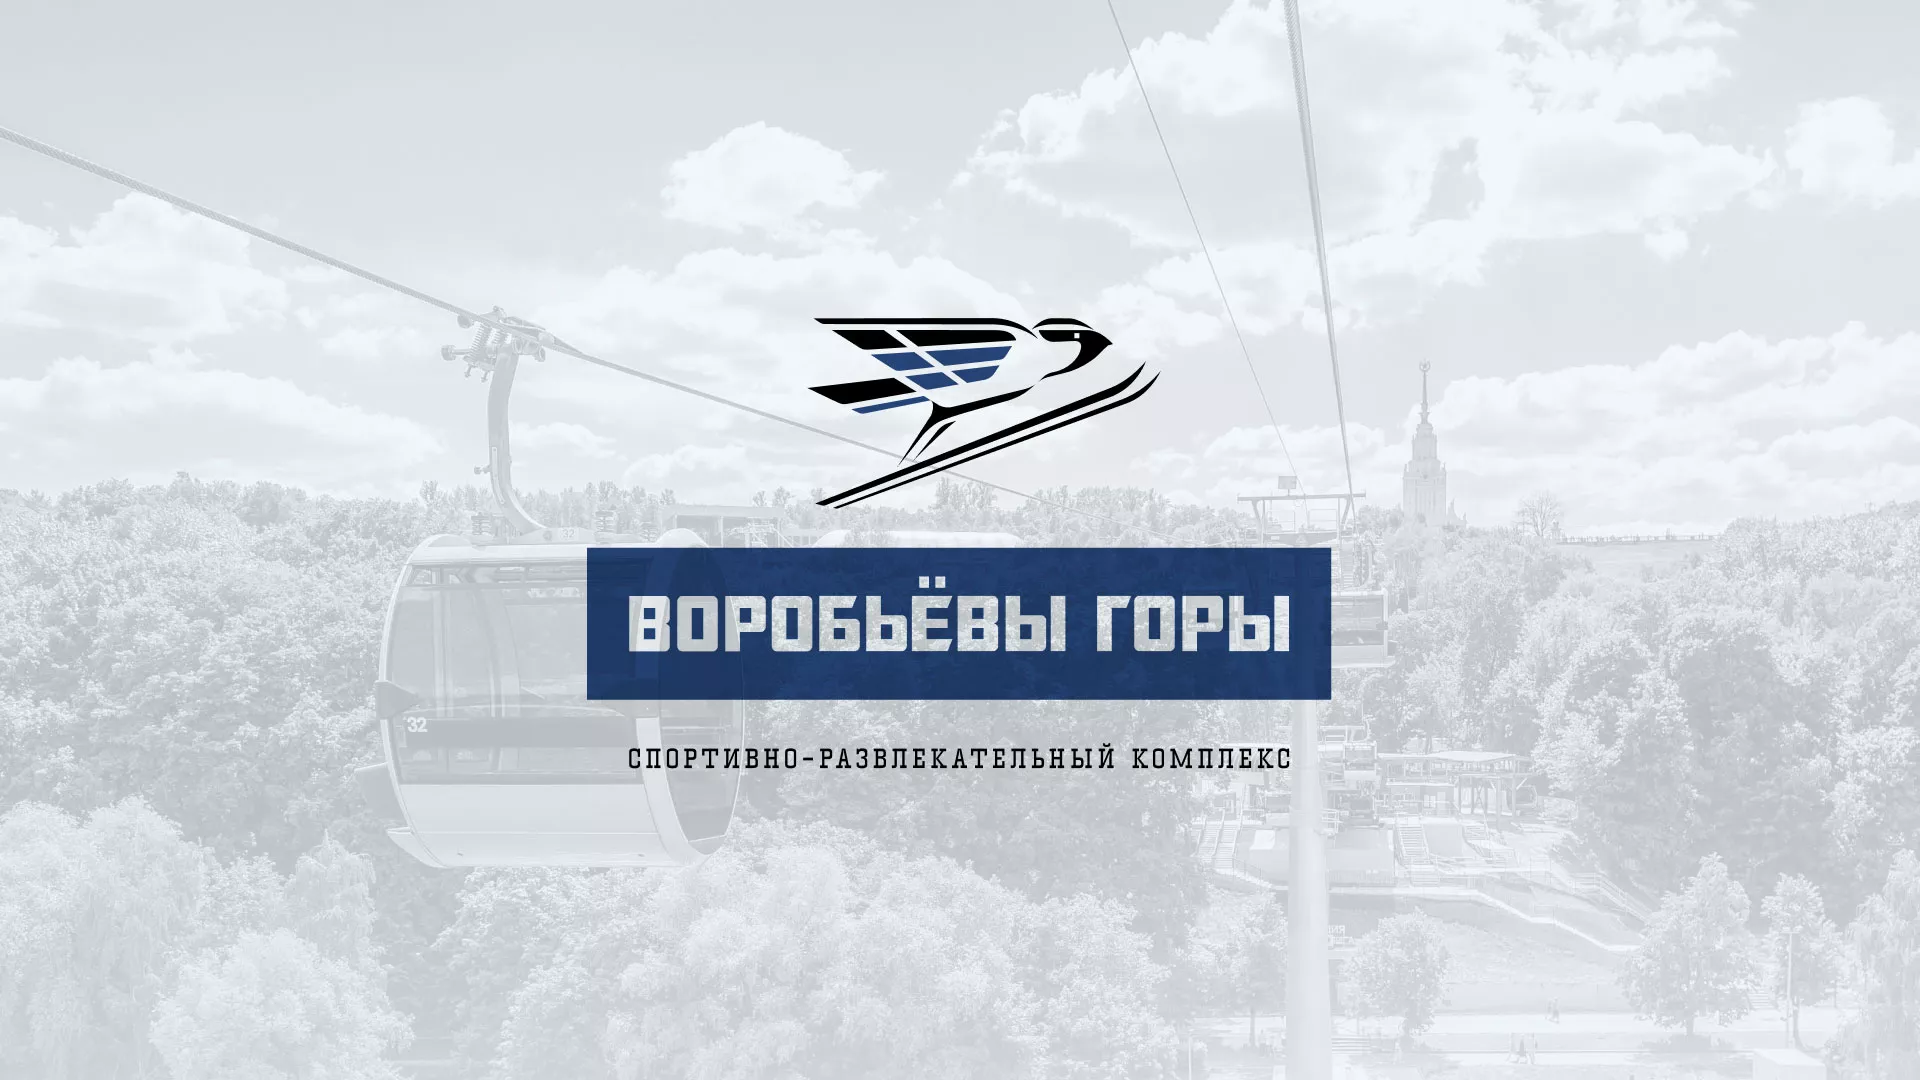 Разработка сайта в Осташкове для спортивно-развлекательного комплекса «Воробьёвы горы»